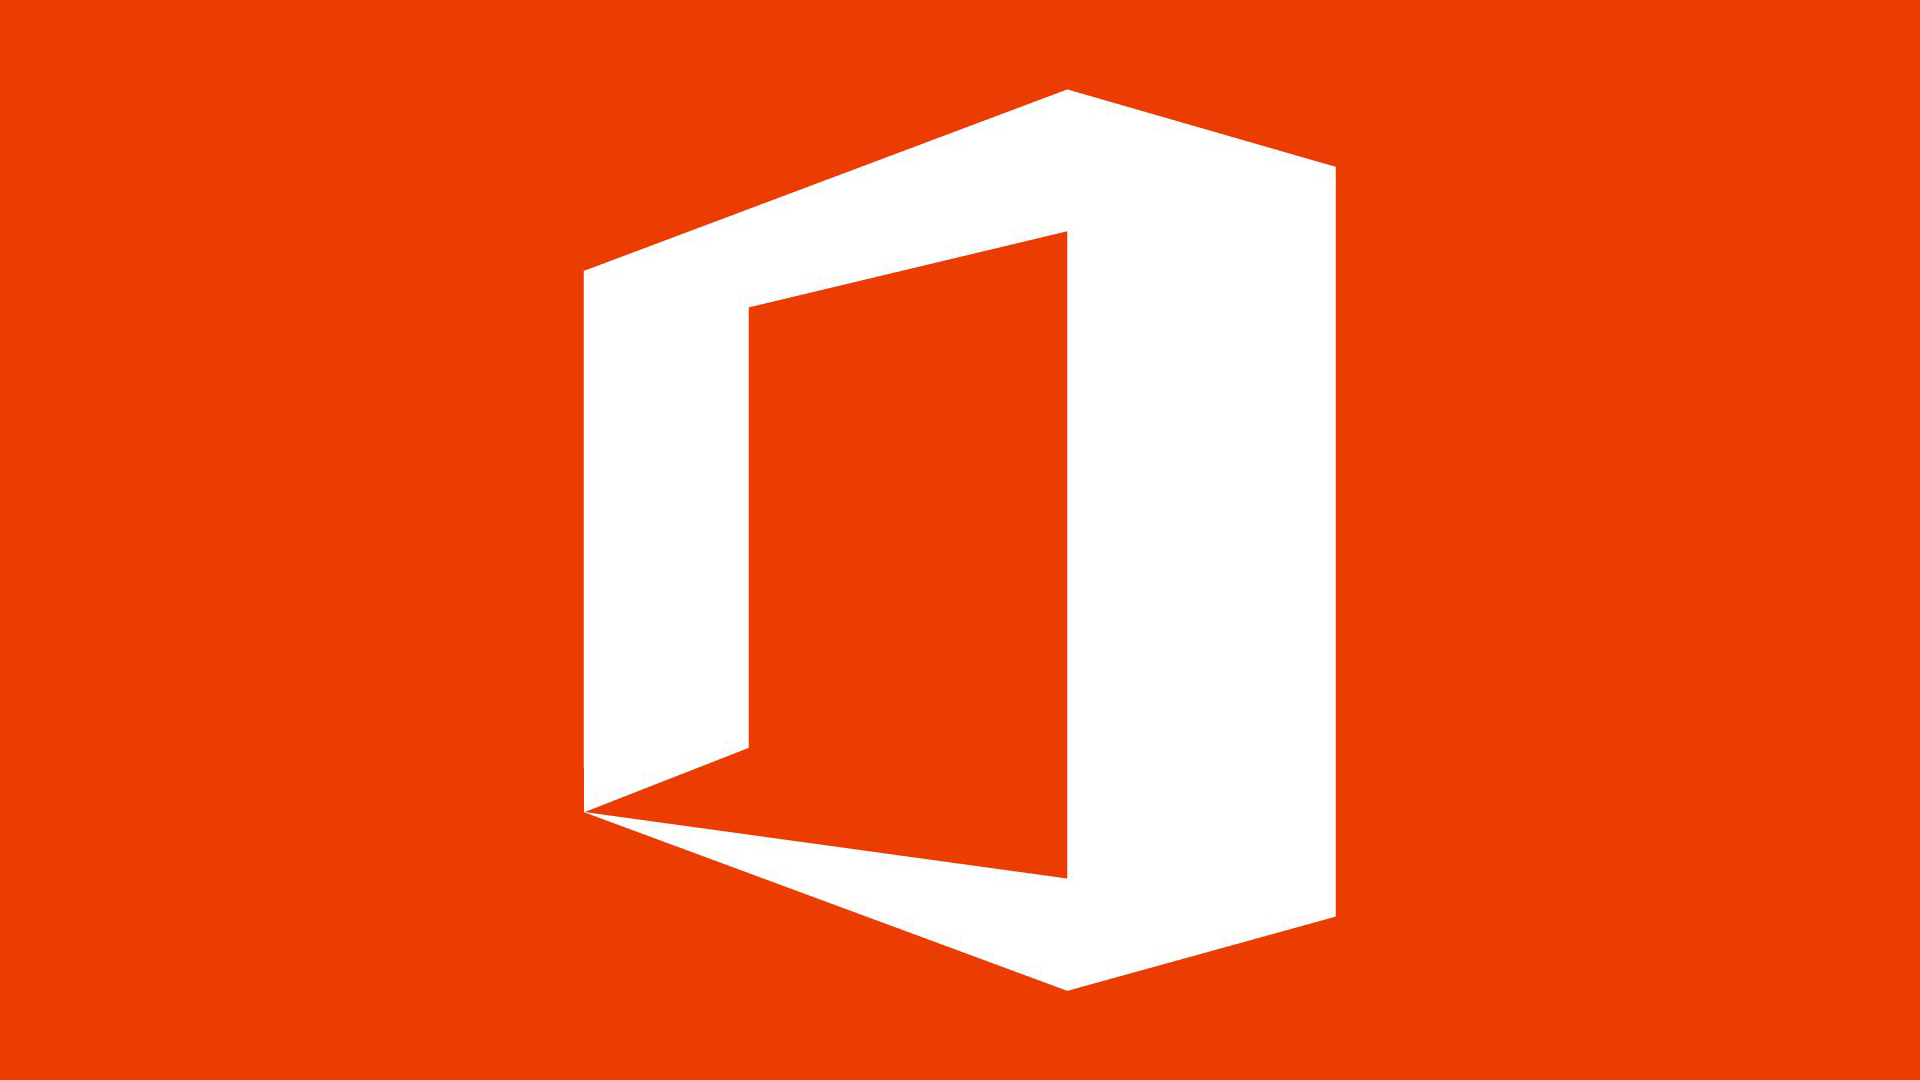 Офис 2016. Microsoft Office 365 логотип. Microsoft Office 2016 значок. Office 2013 логотип. Иконка MS Office 2019.